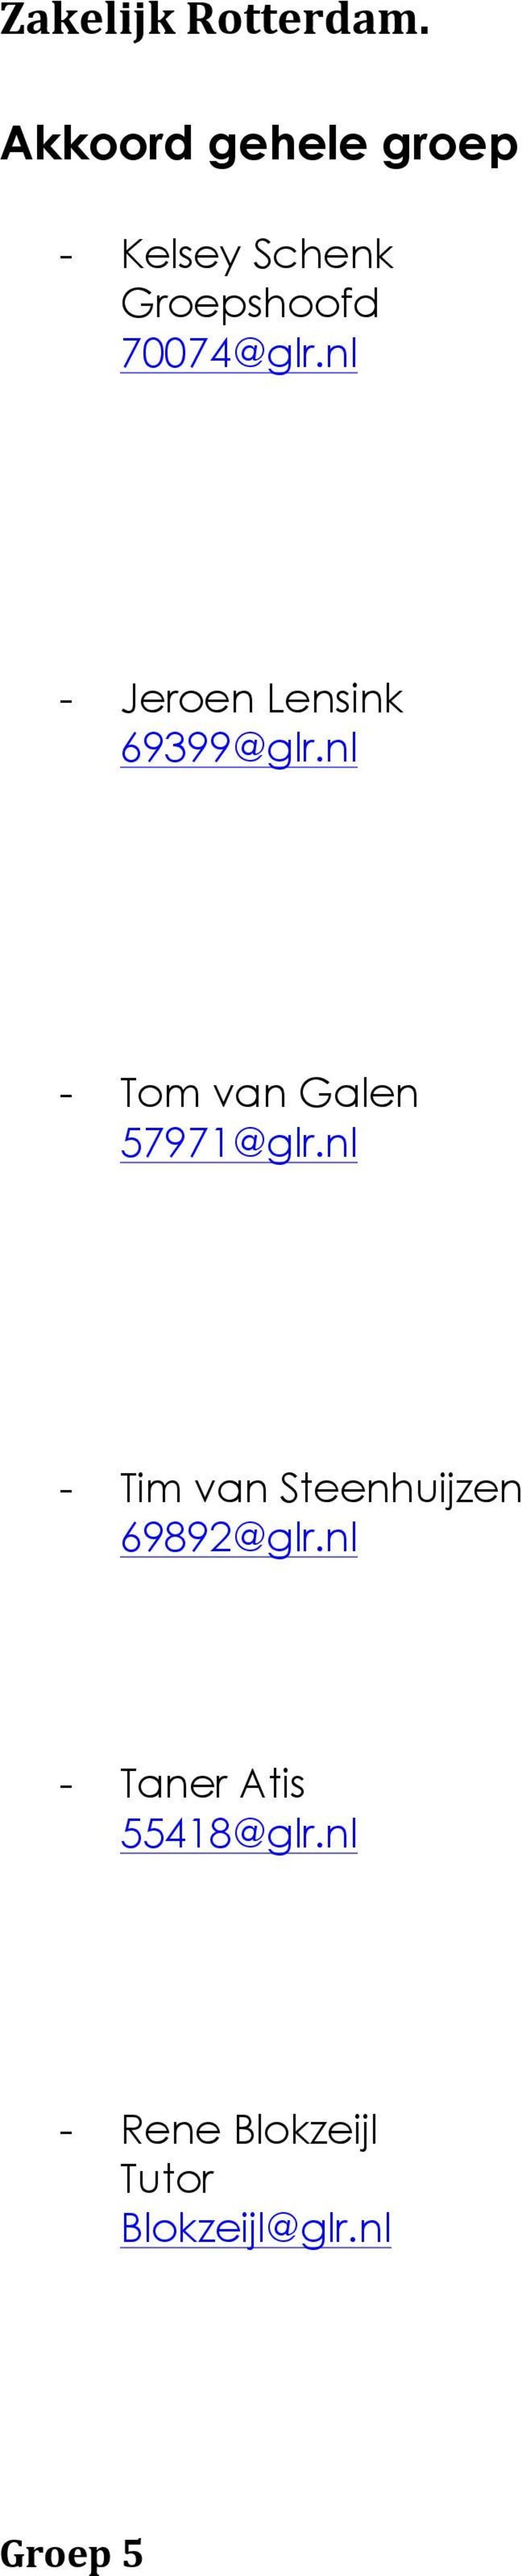 nl - Tom van Galen 57971@glr.